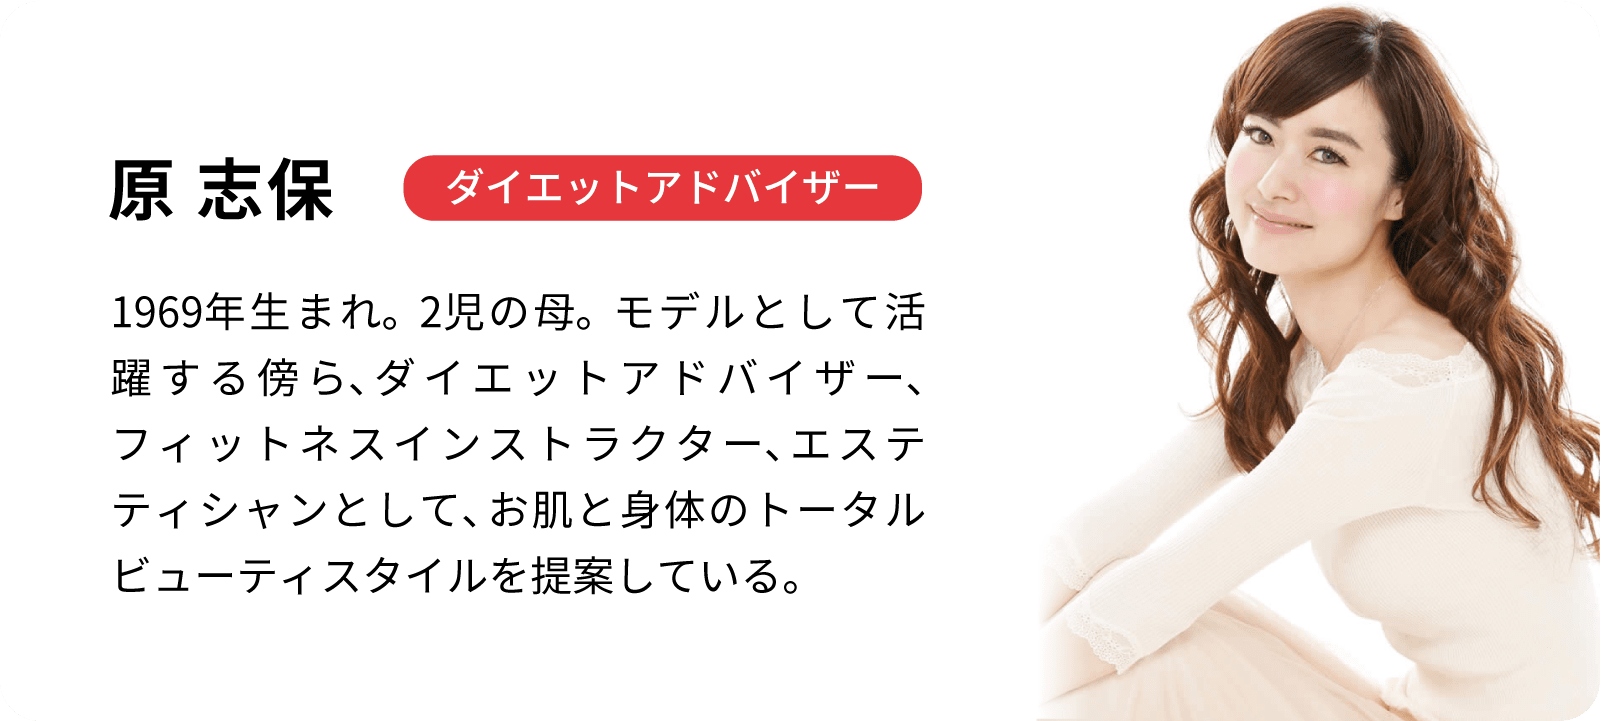 美容/健康 美容機器 キャビスパ RFコア PLUS | YA-MAN TOKYO JAPAN | ヤーマン株式会社